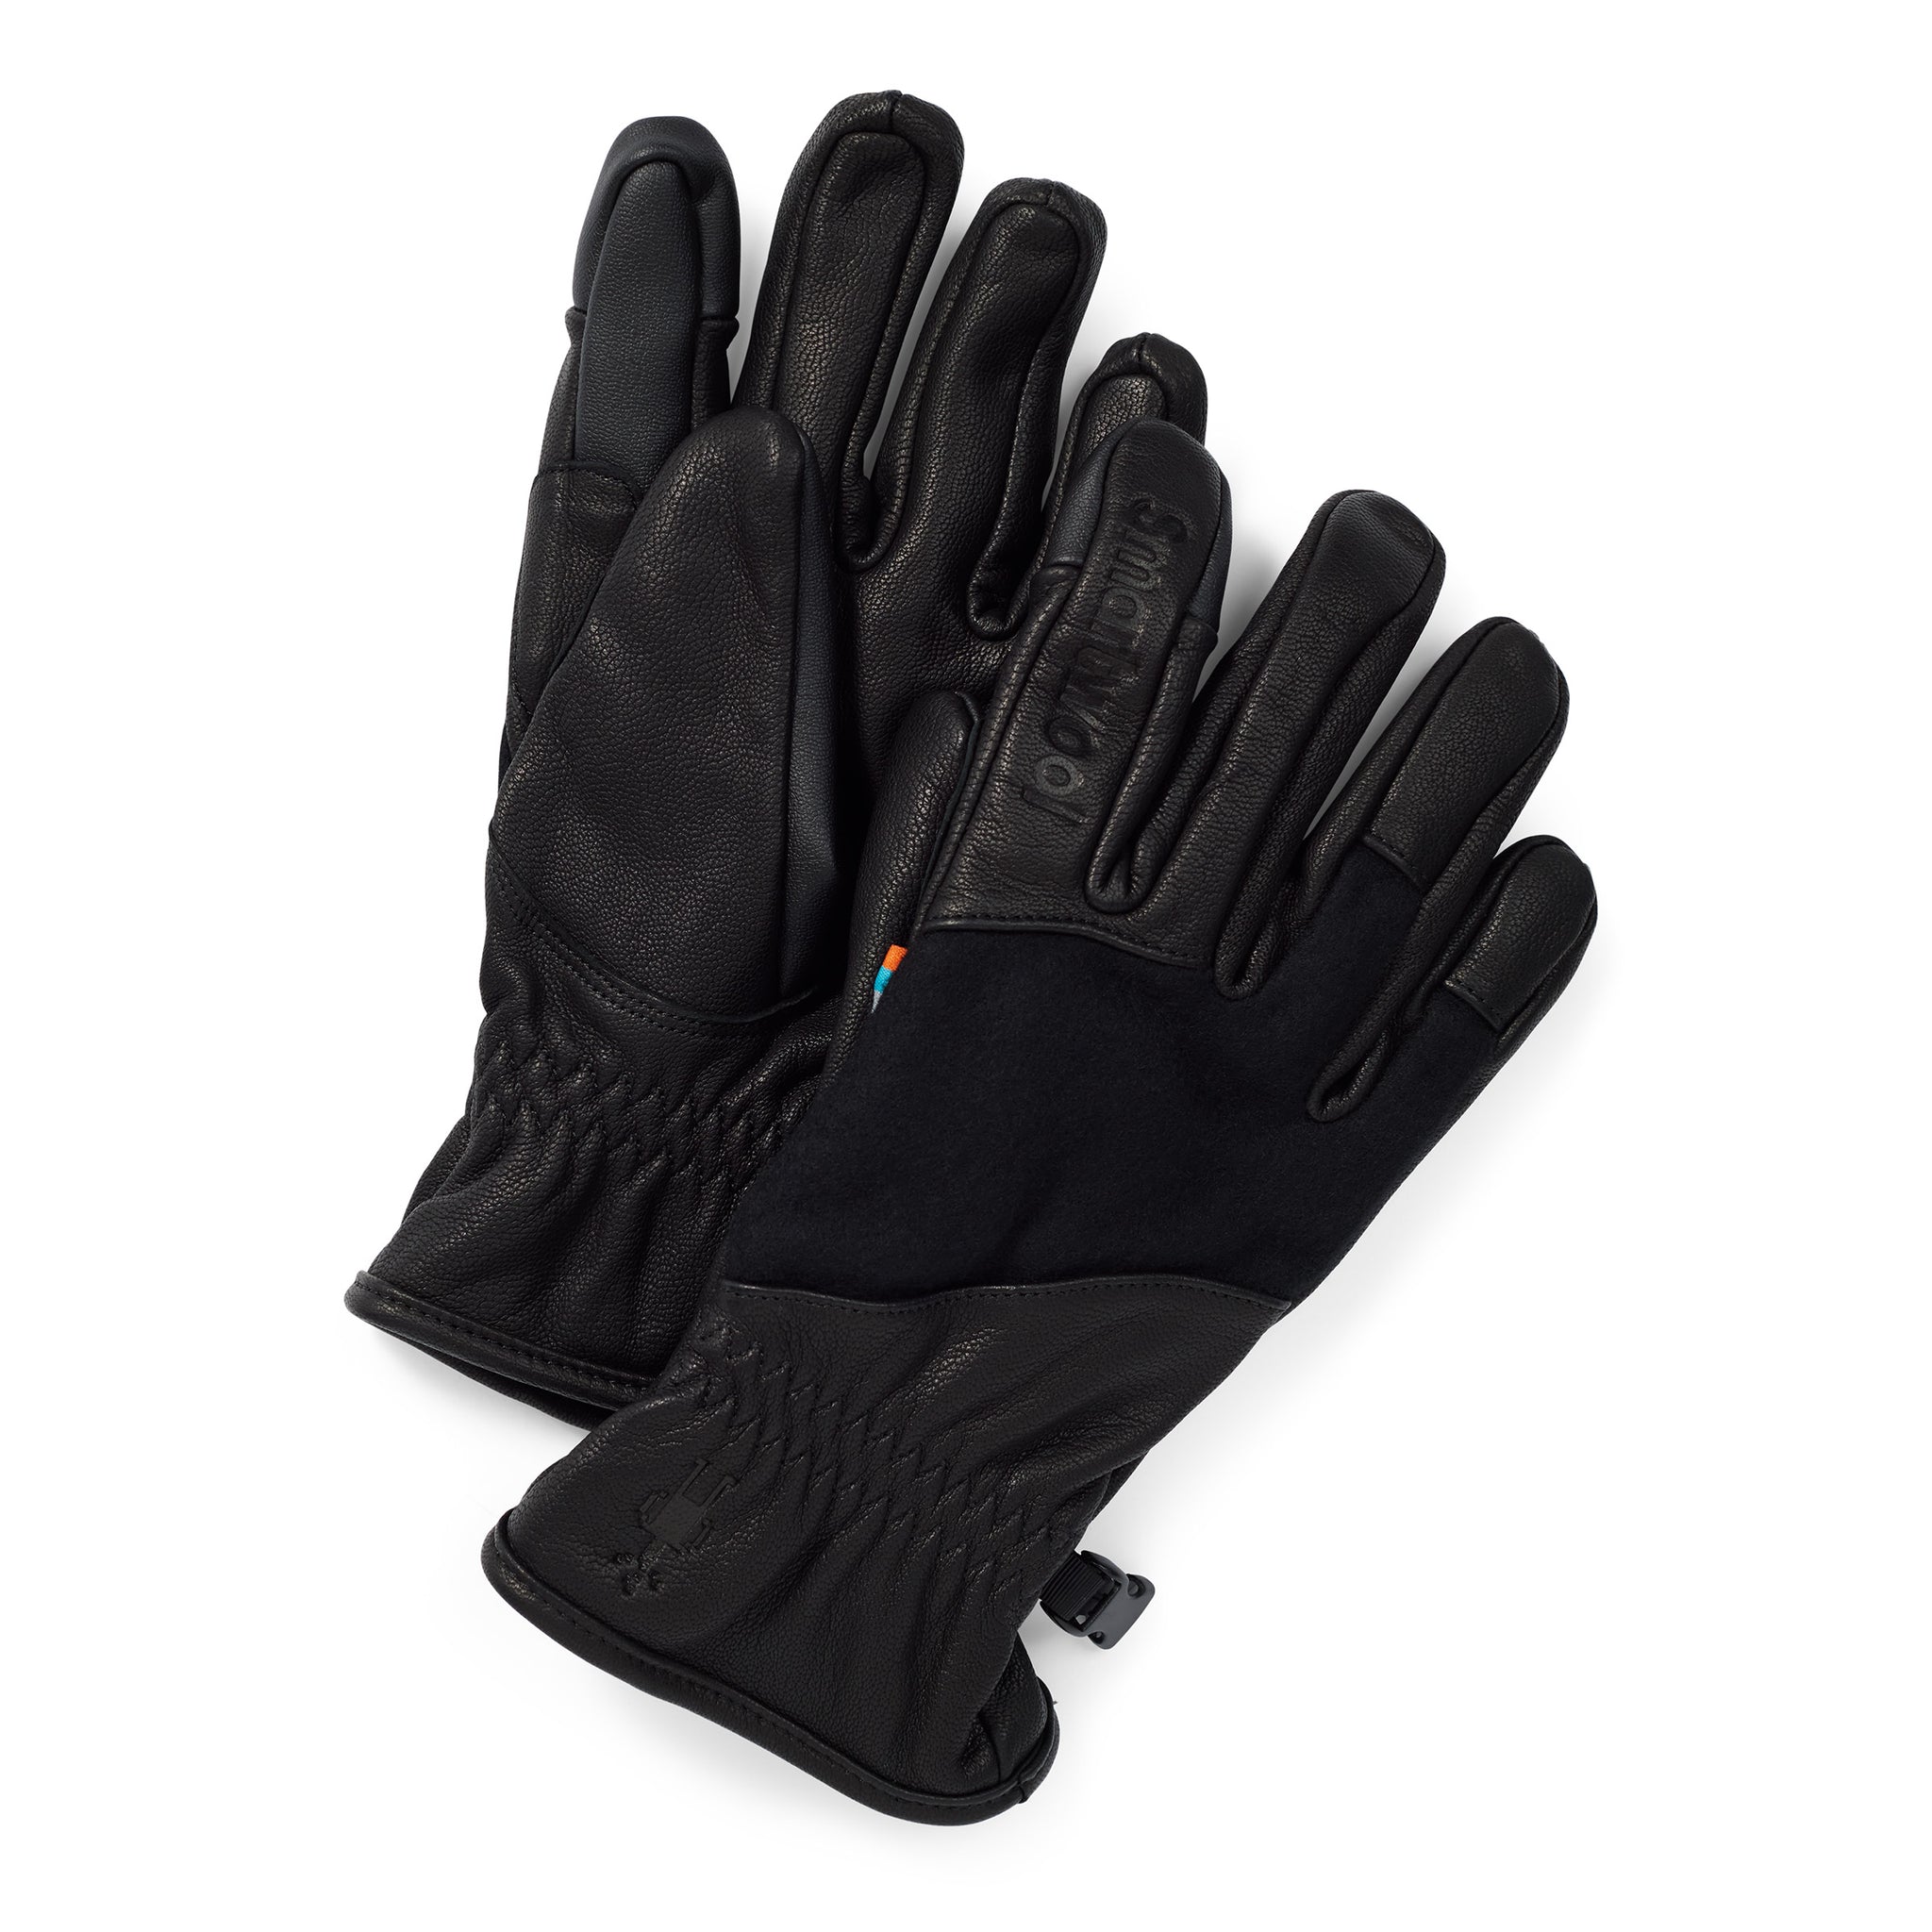 Ridgeway Glove - Black